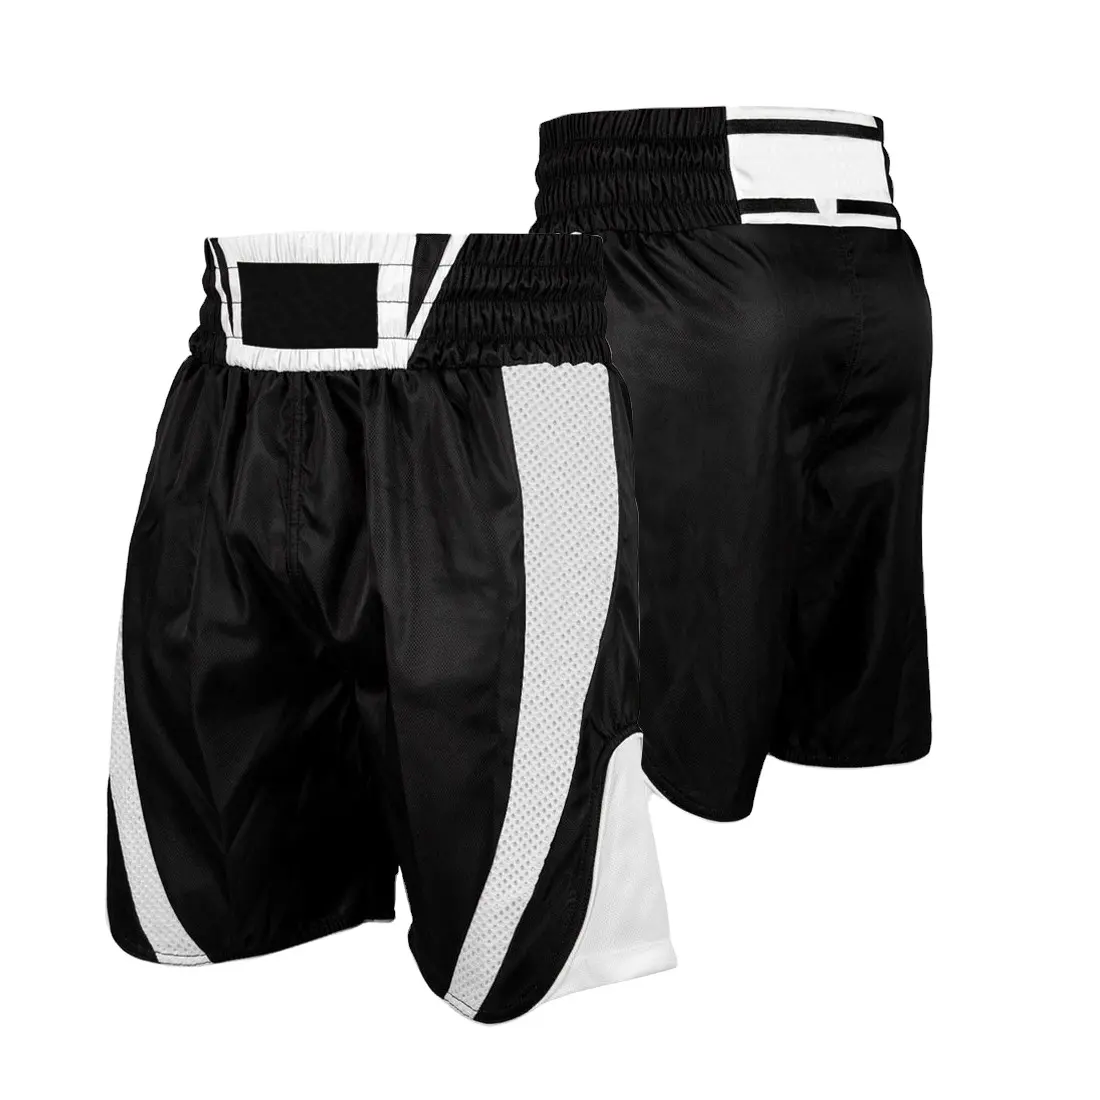 Shorts de mma ufc, shorts grappling para artes marciais, curto boxer, luta curta